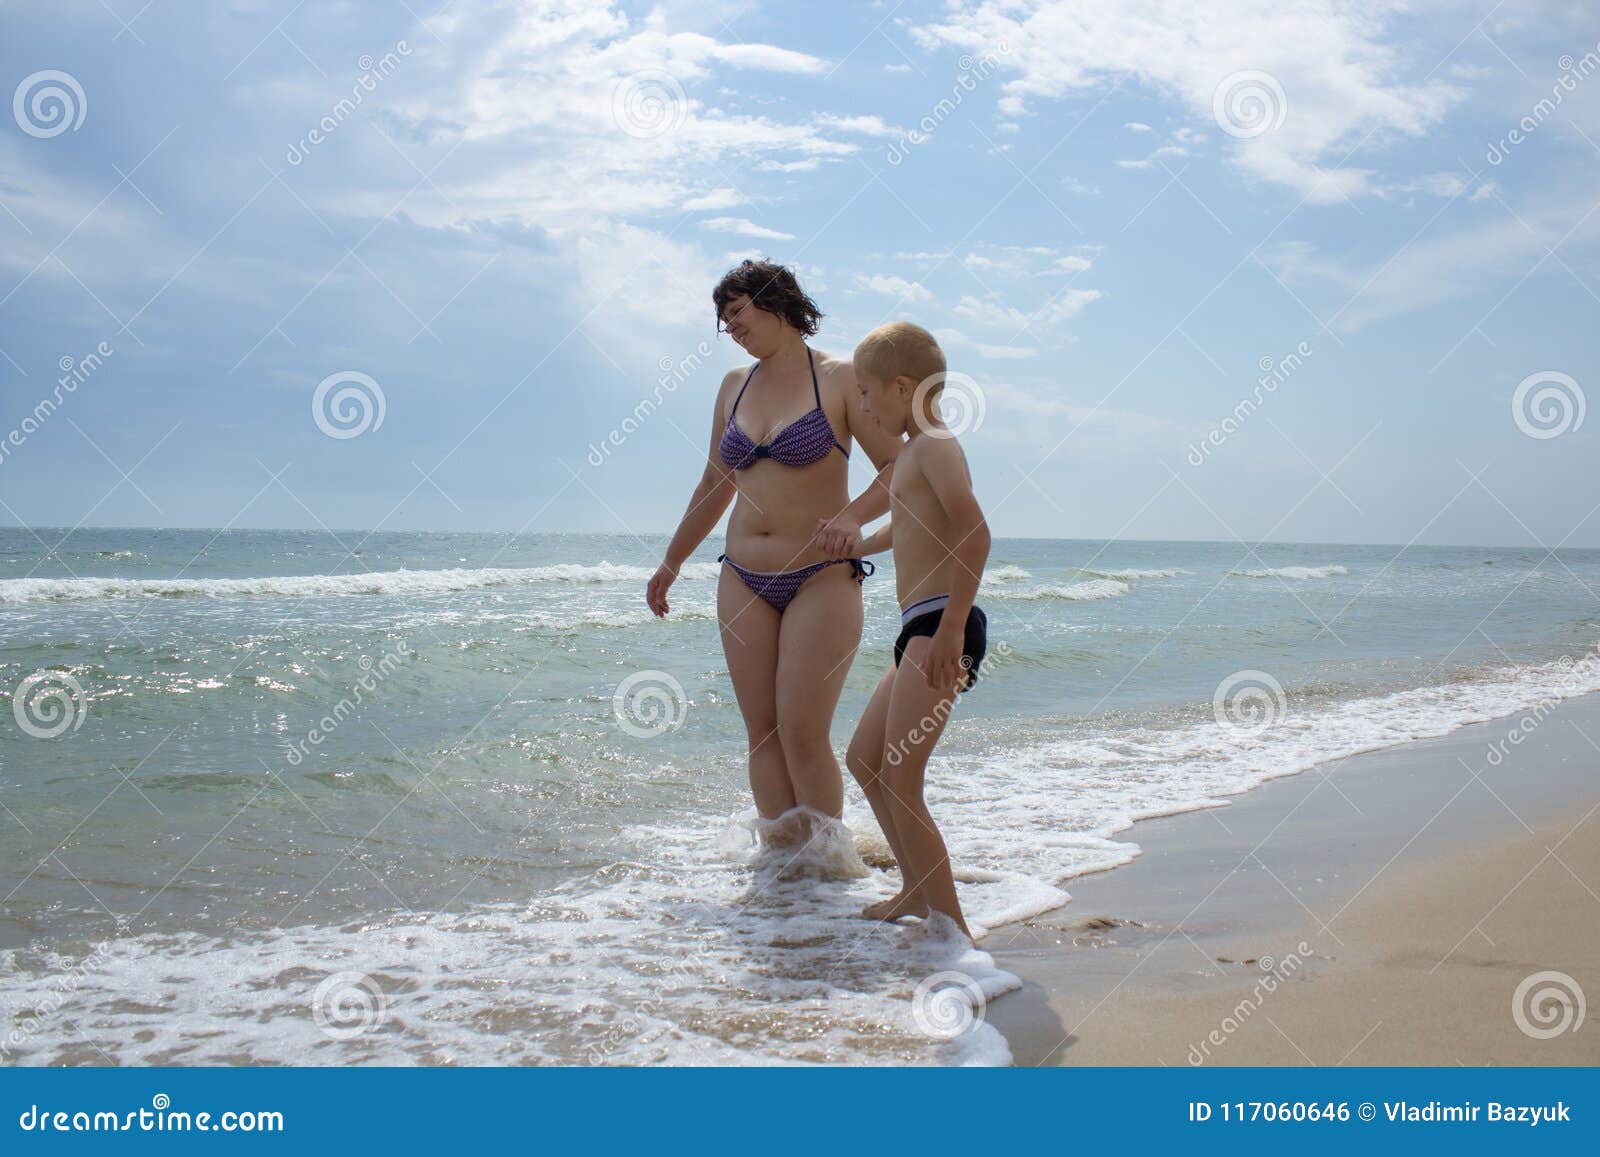 рассказы голая мама на пляже фото 17